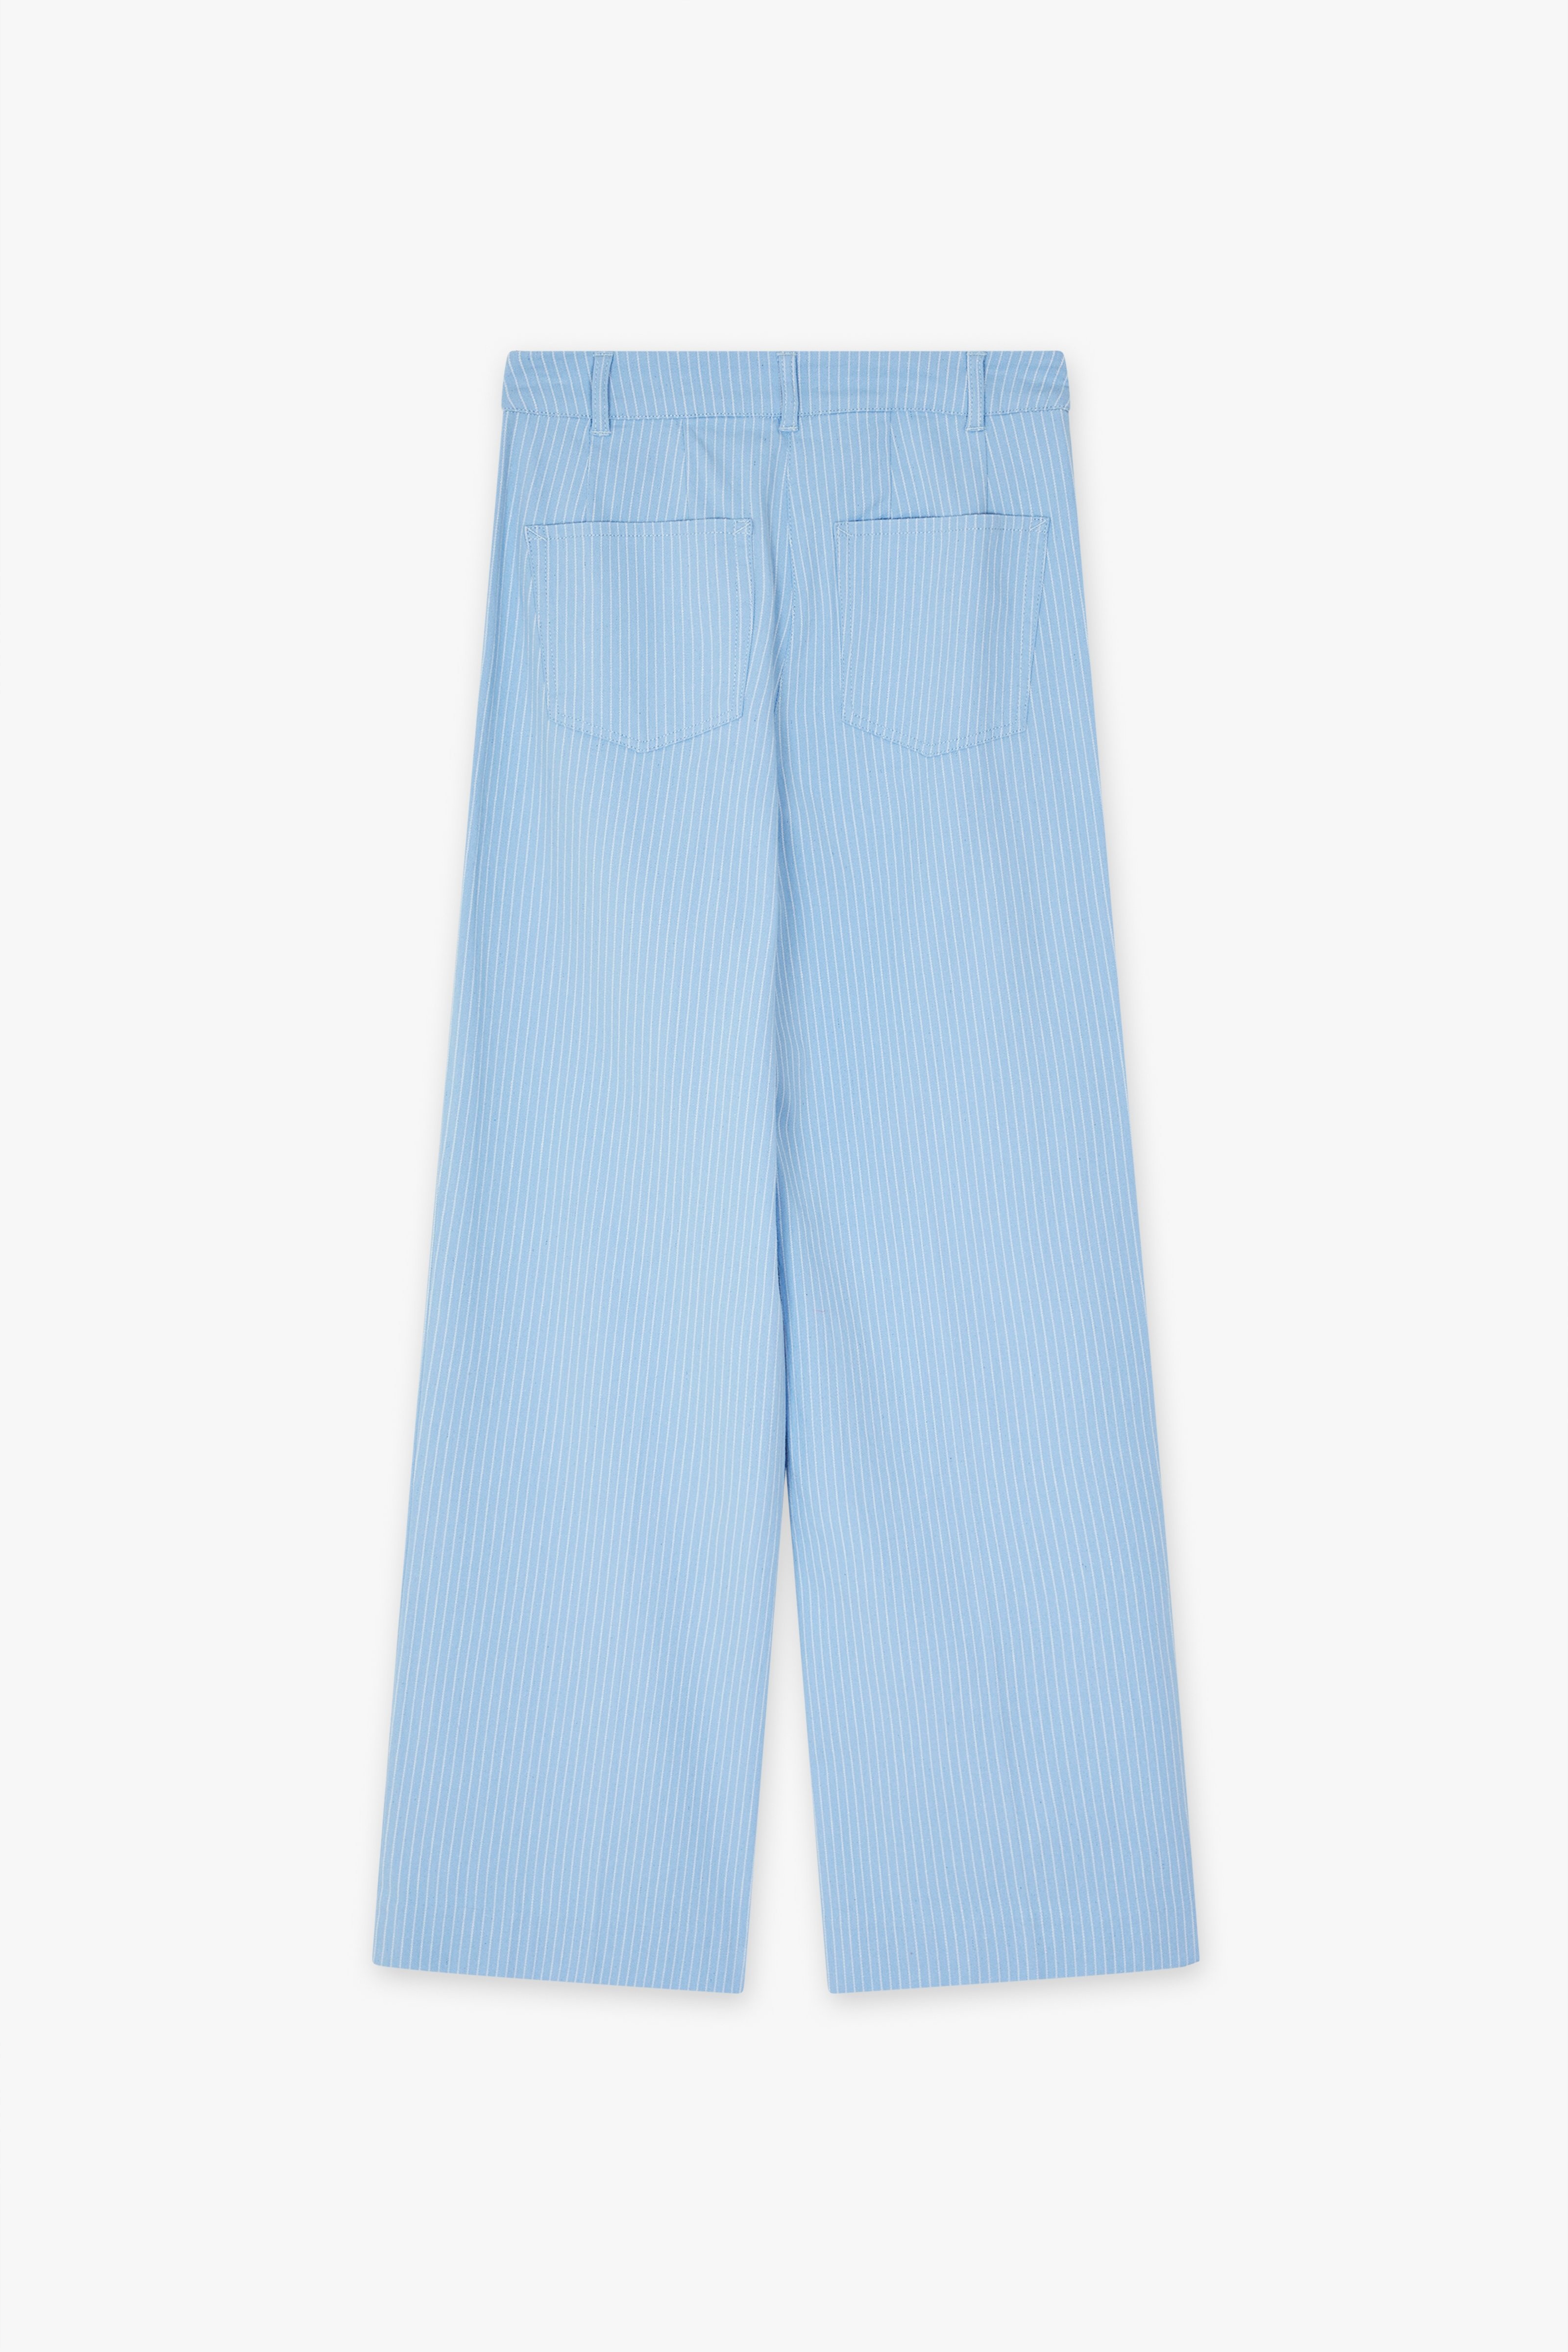 CKS Dames - RODA - jeans longs - bleu clair